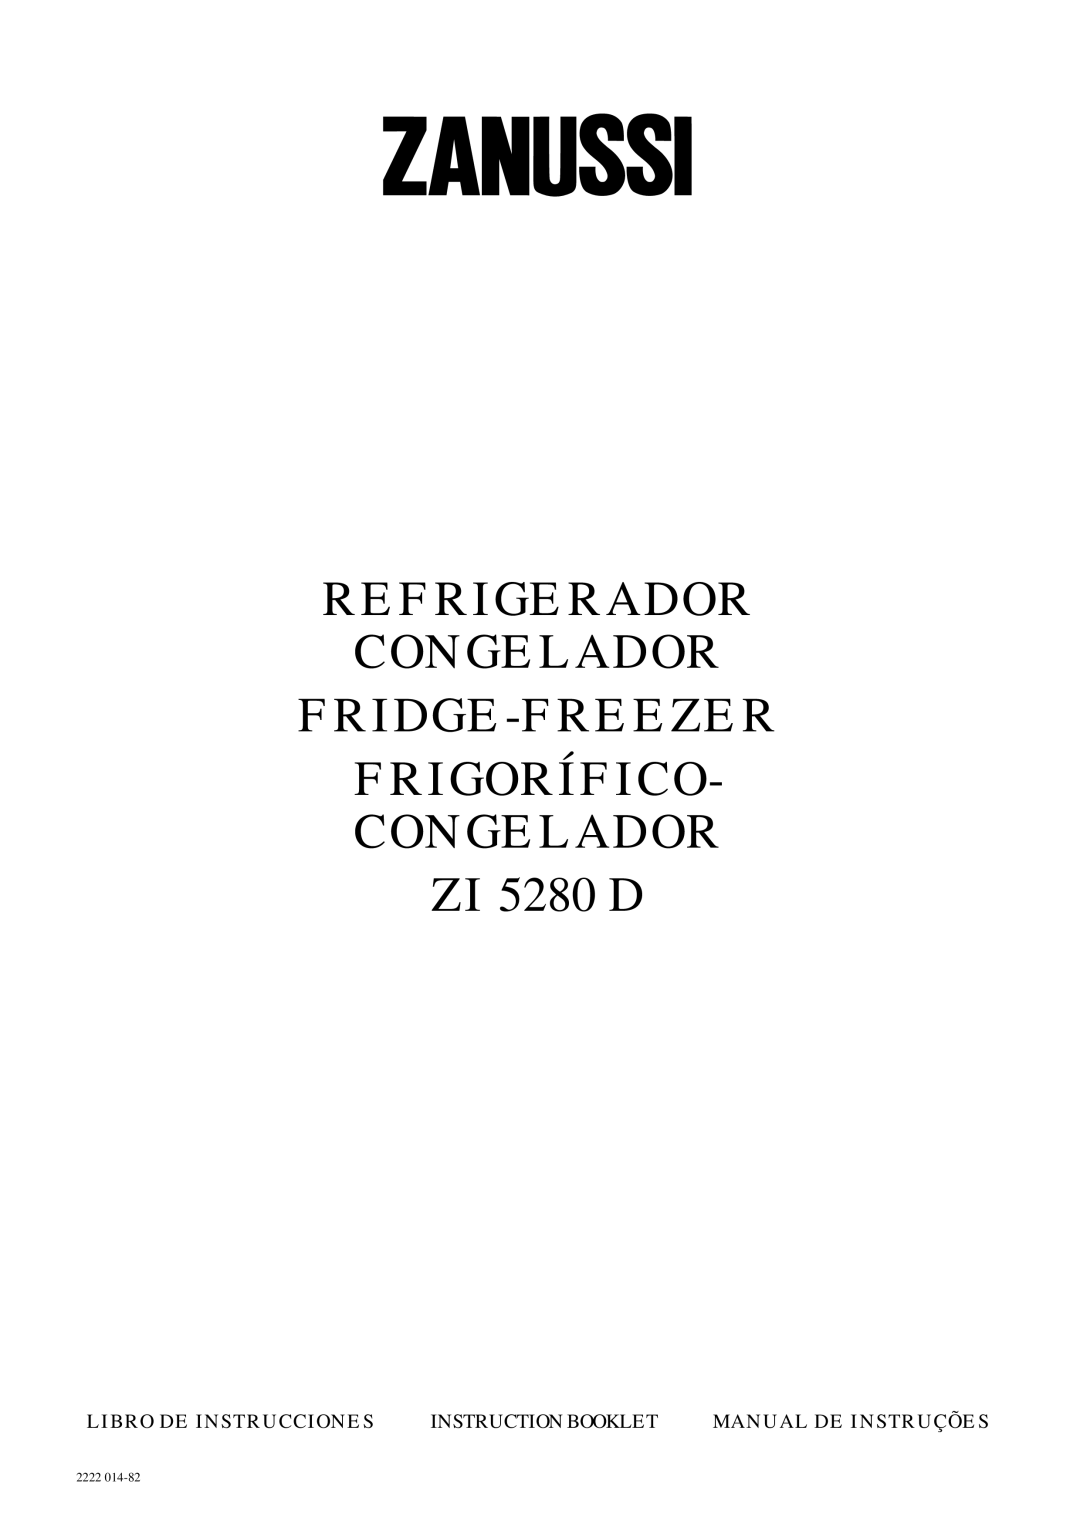 Zanussi ZI 5280 D manual Refrigerador Congelador Fridge-Freezer Frigorífico Congelador, Libro De Instrucciones, 2222 